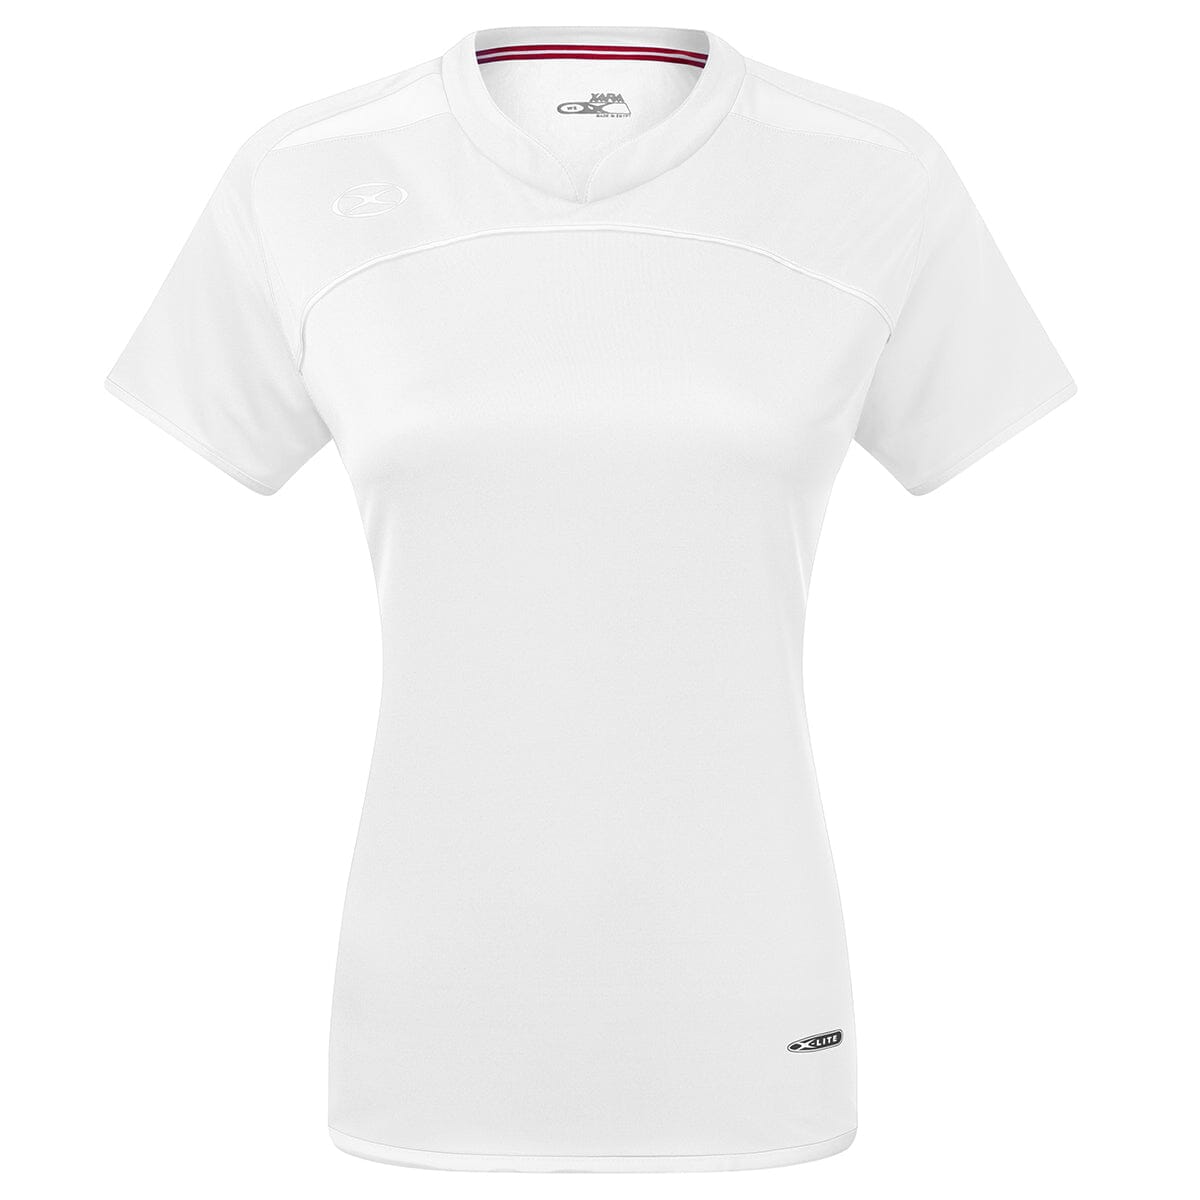 Cardiff Jersey - Female Shirt Xara Soccer White/White Womens Youth Medium 